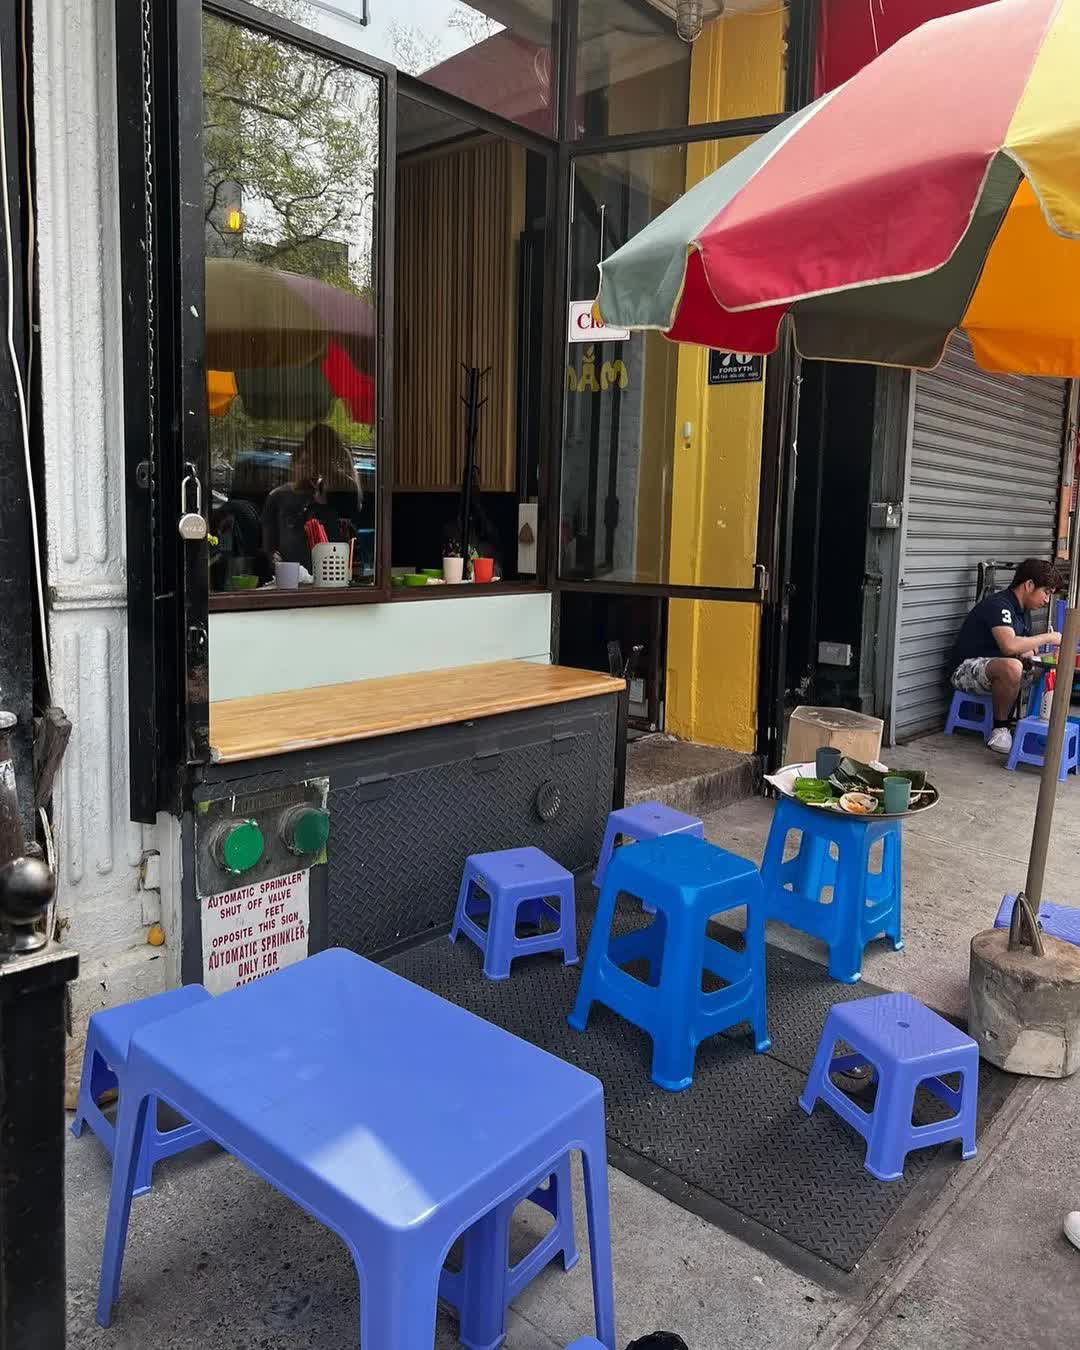 Nhà hàng Việt bán bún đậu mắm tôm 800 nghìn VNĐ/suất ở New York: Lọt top 30 quán ăn ngon nhất của báo Mỹ, thực đơn khiến khách ca ngợi hết lời - Ảnh 5.